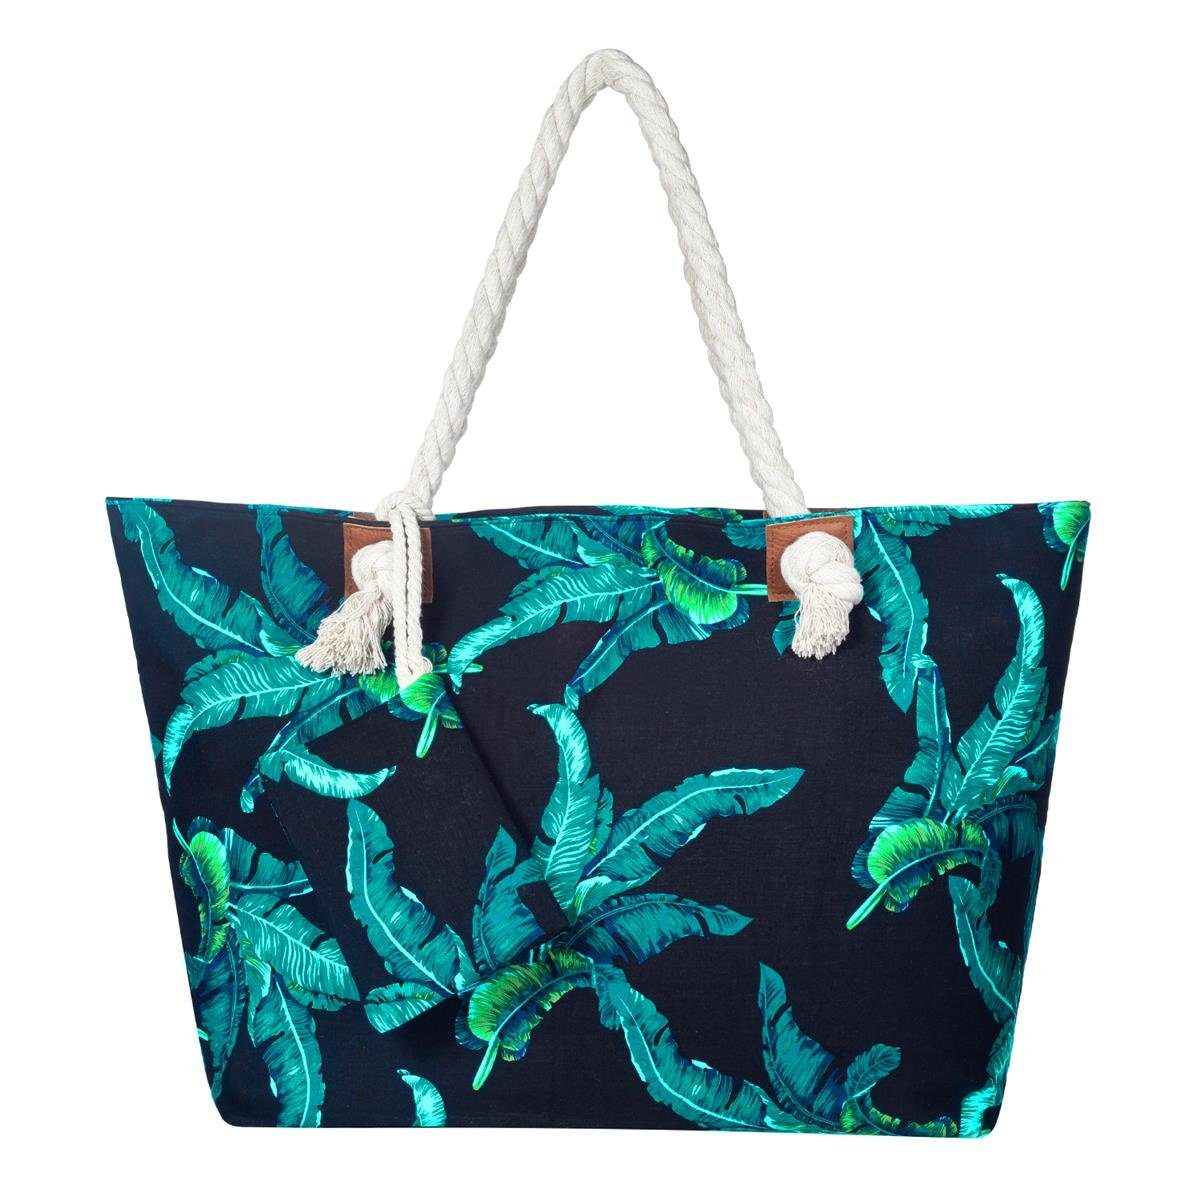 DonDon Strandtasche Shopper Schultertasche Beach Style (2-tlg), Große Strandtasche, mit Reißverschluss, tolle Motive blätter Blau | Strandtaschen